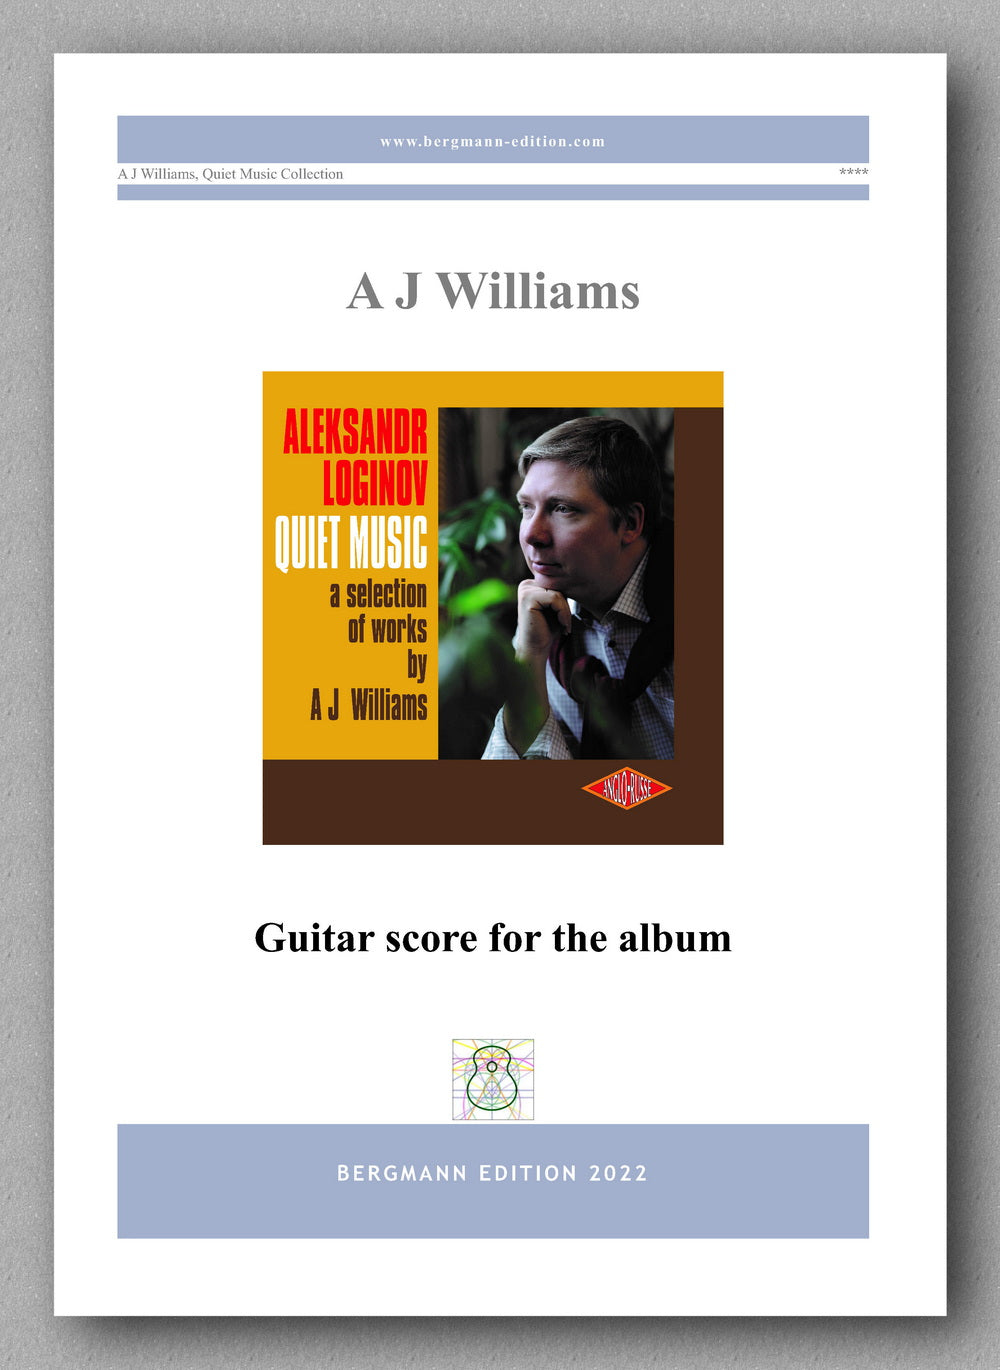 Andrew J Williams, Quiet Music - Guitar score for the album - cover